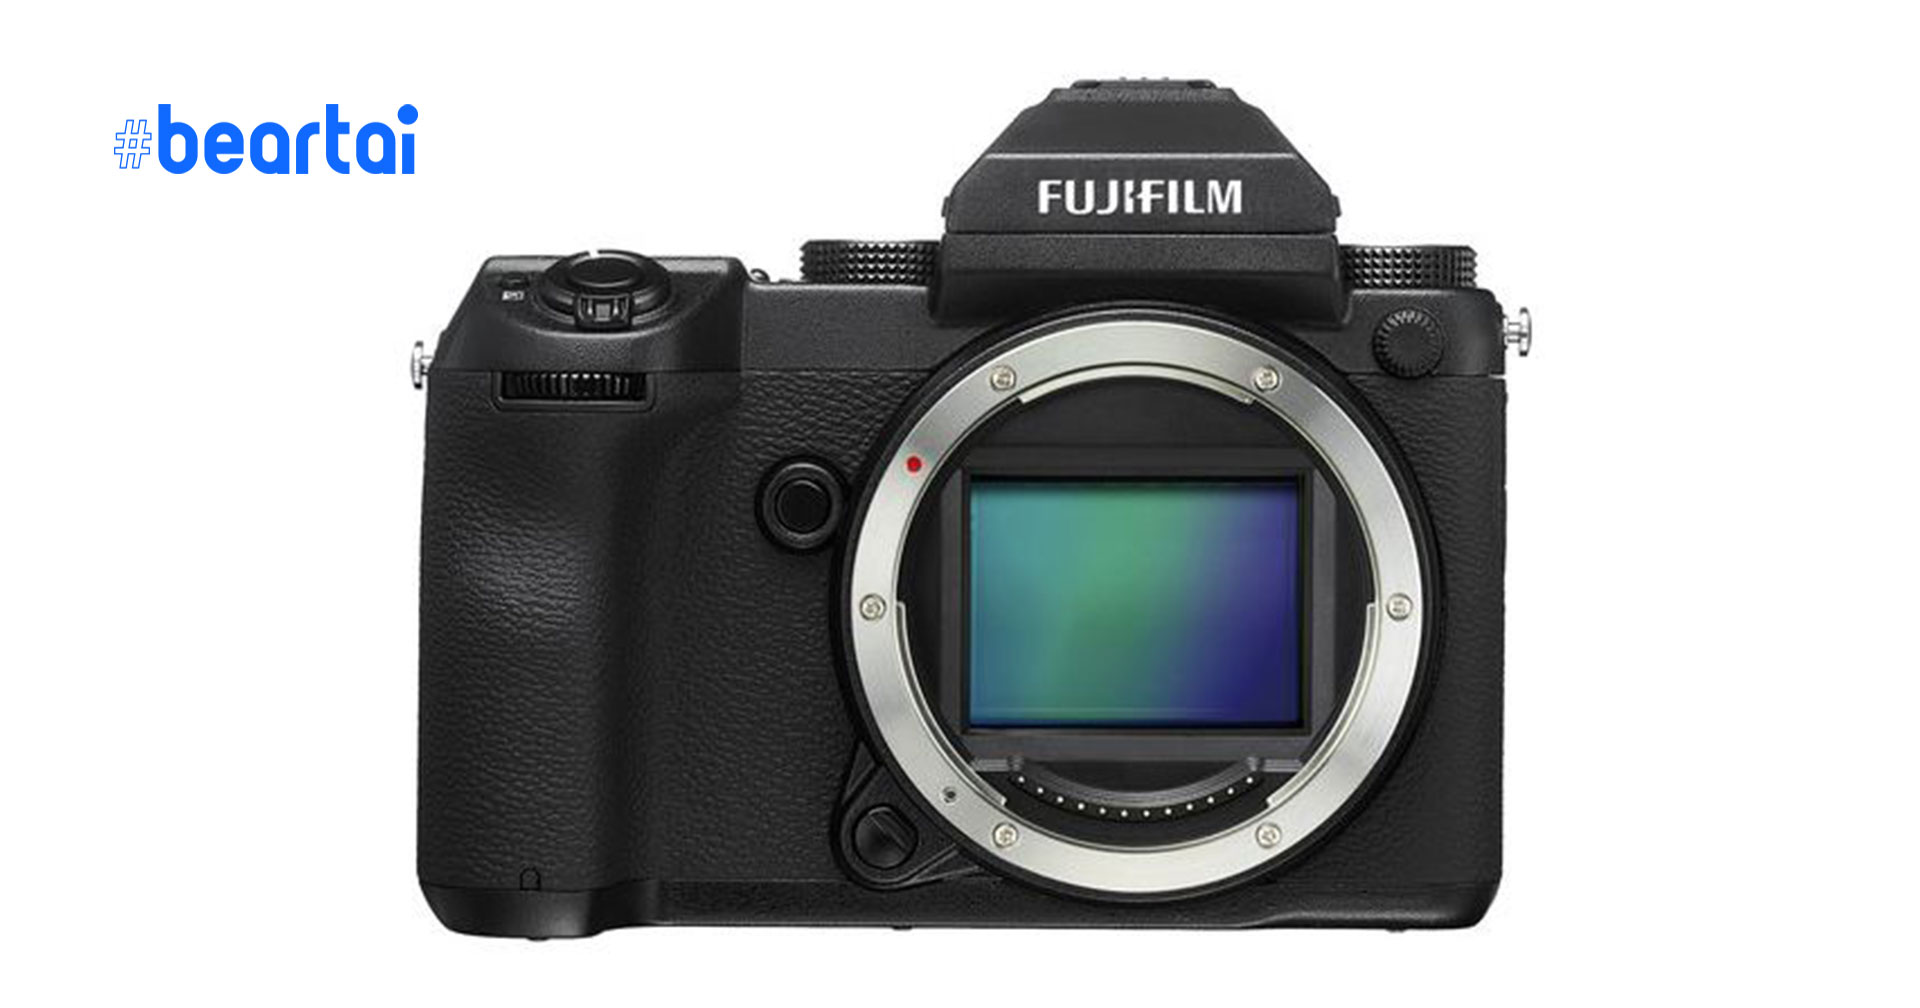 หลุดราคา! กล้องมีเดียมฟอร์แมต Fujifilm GFX100S